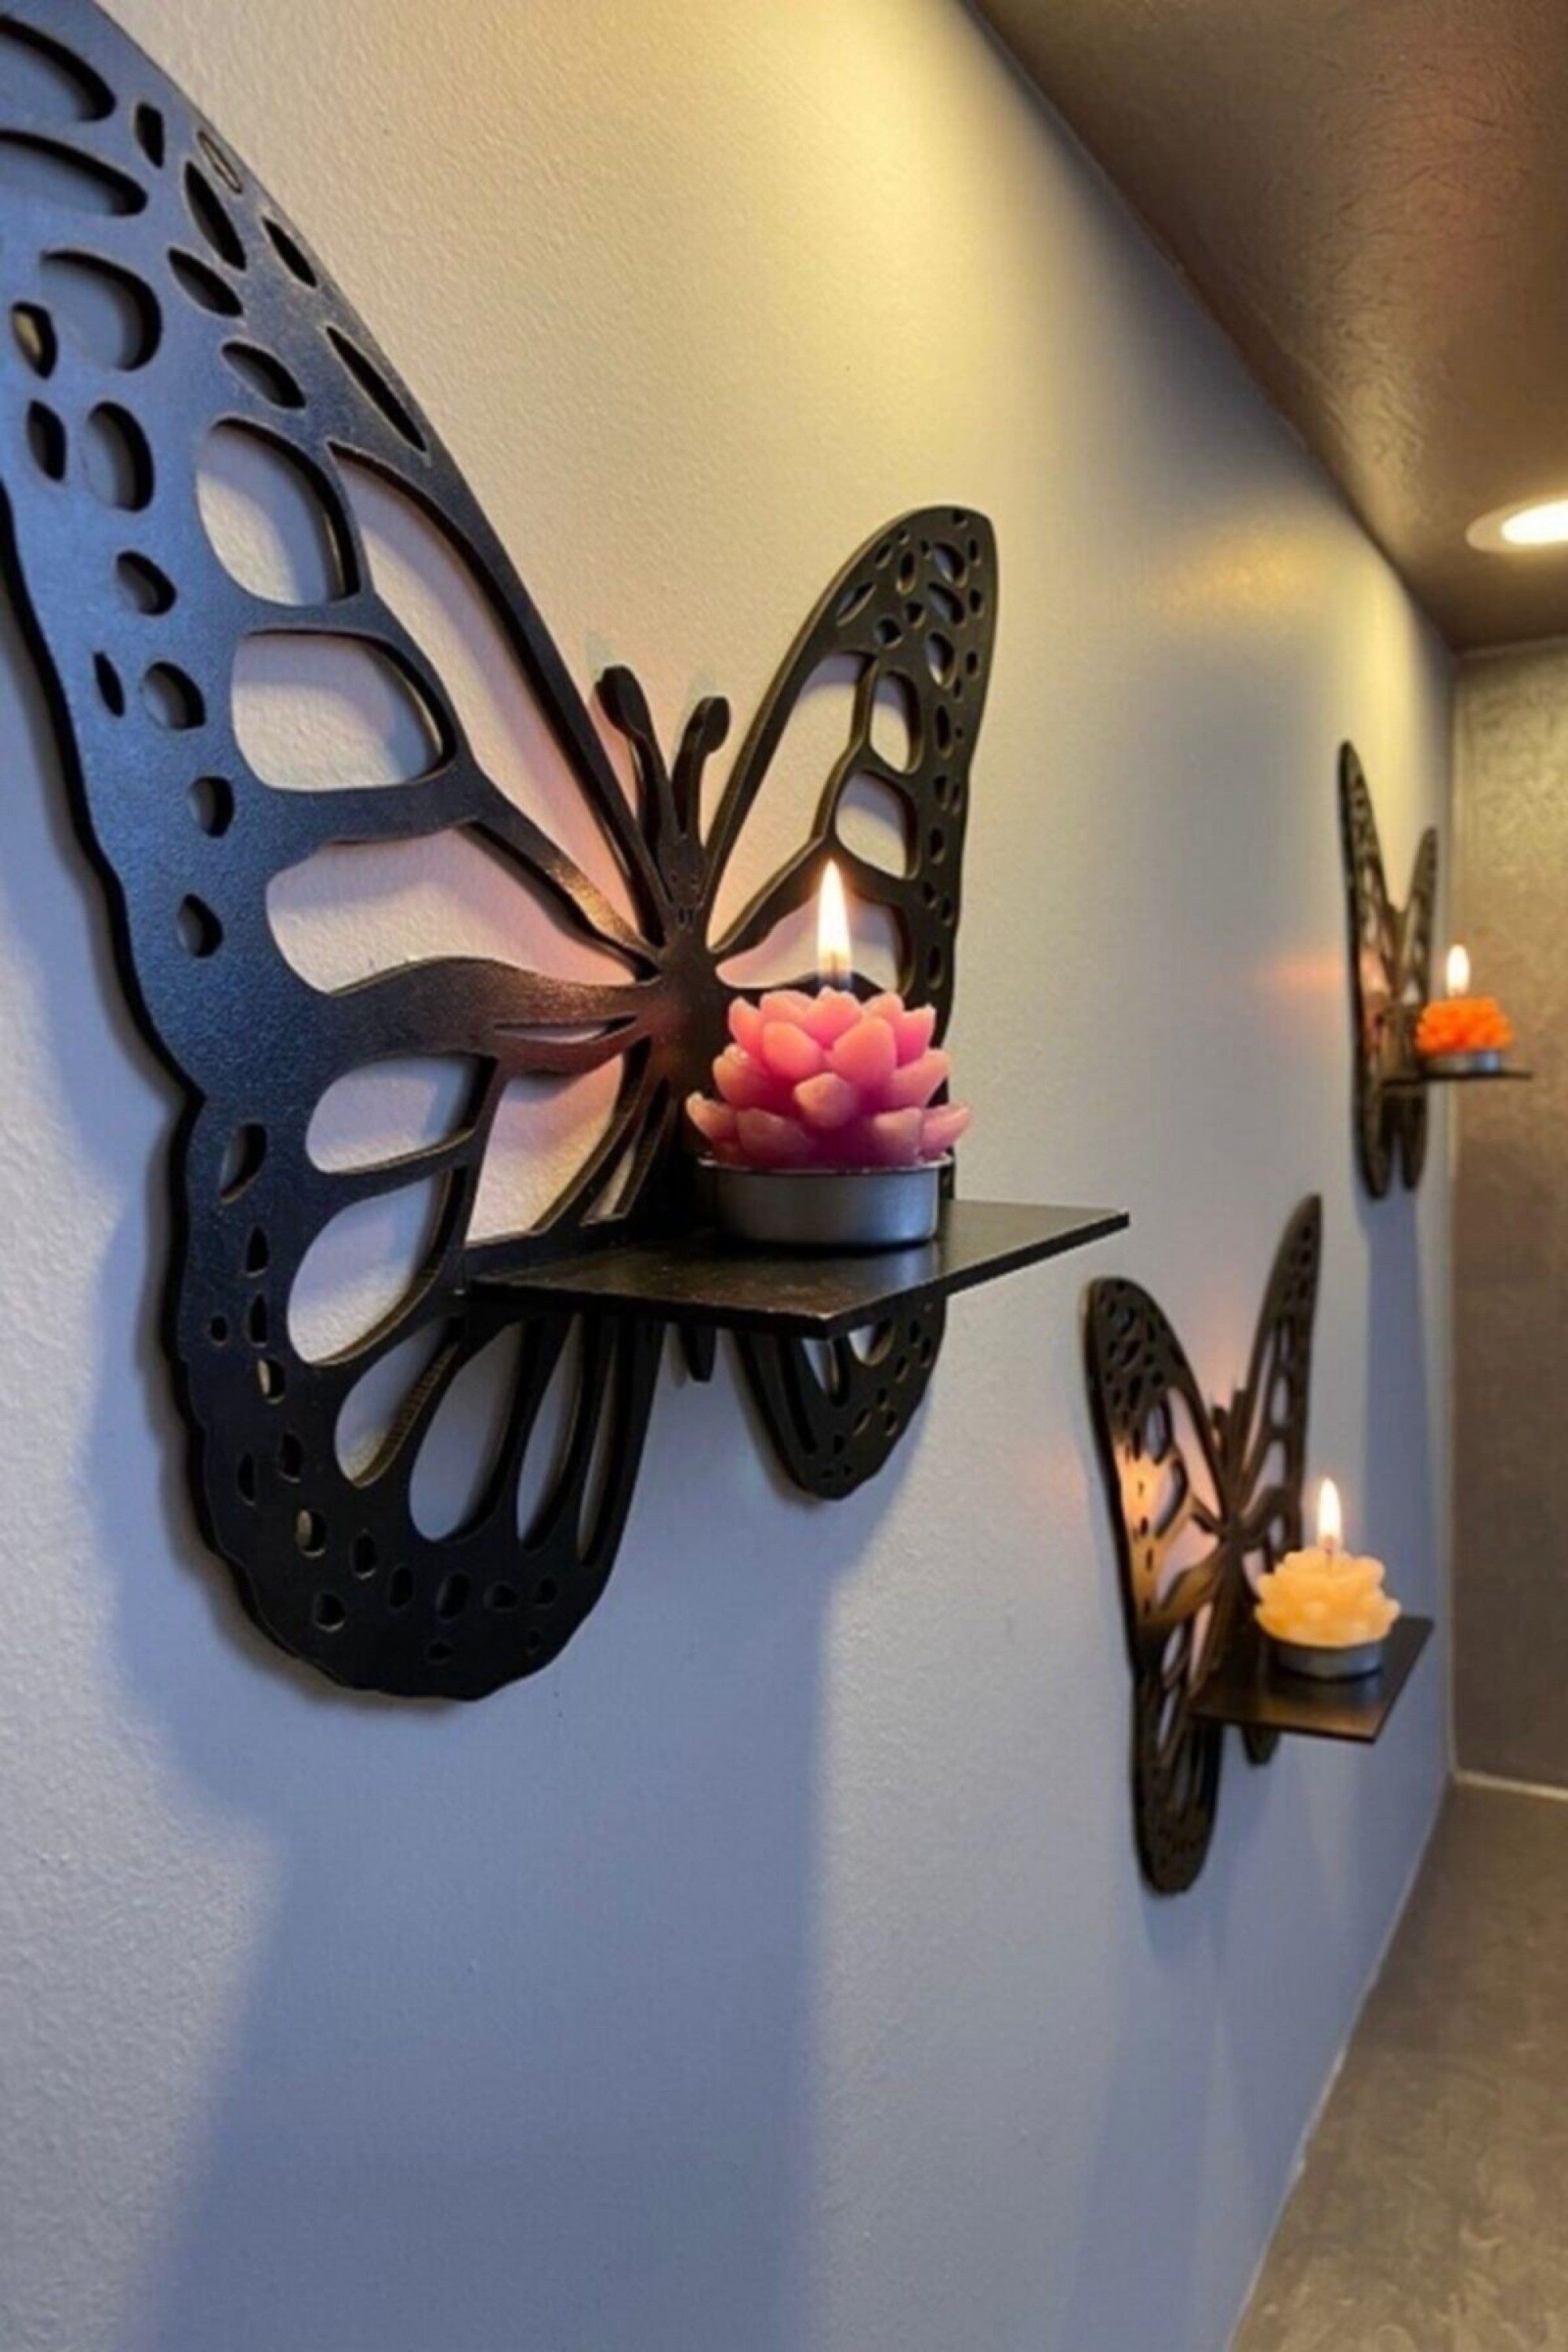 Dekoratif Kelebek Duvar Rafı 3'lü Set Butterfly wood decor shelf